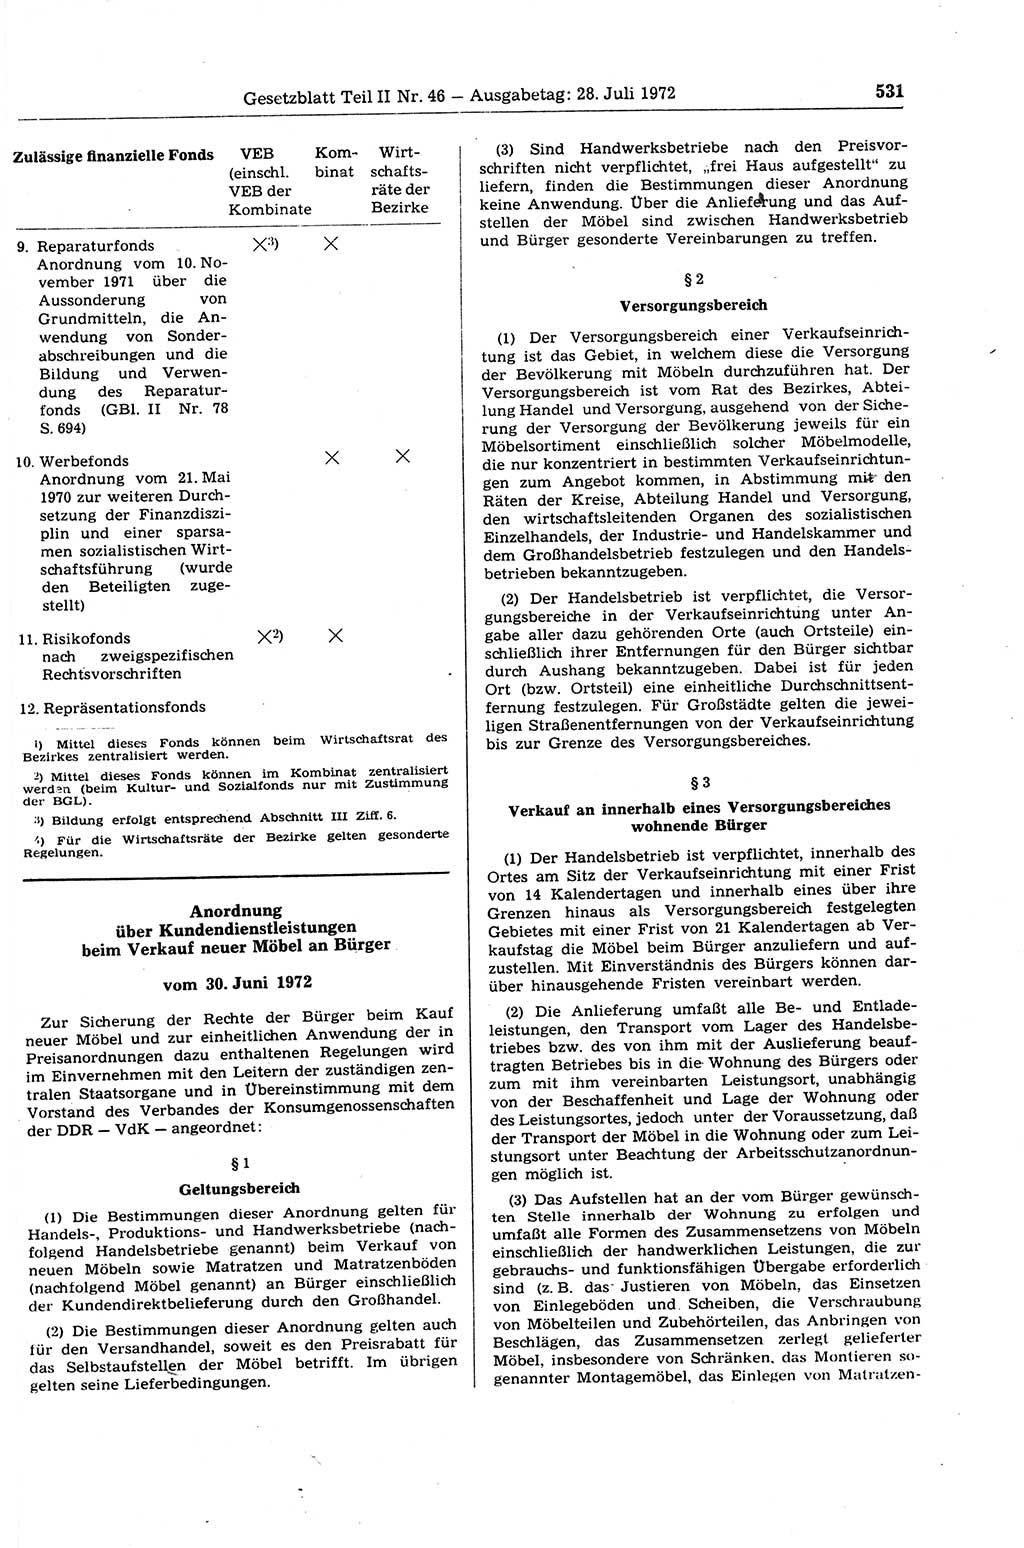 Gesetzblatt (GBl.) der Deutschen Demokratischen Republik (DDR) Teil ⅠⅠ 1972, Seite 531 (GBl. DDR ⅠⅠ 1972, S. 531)